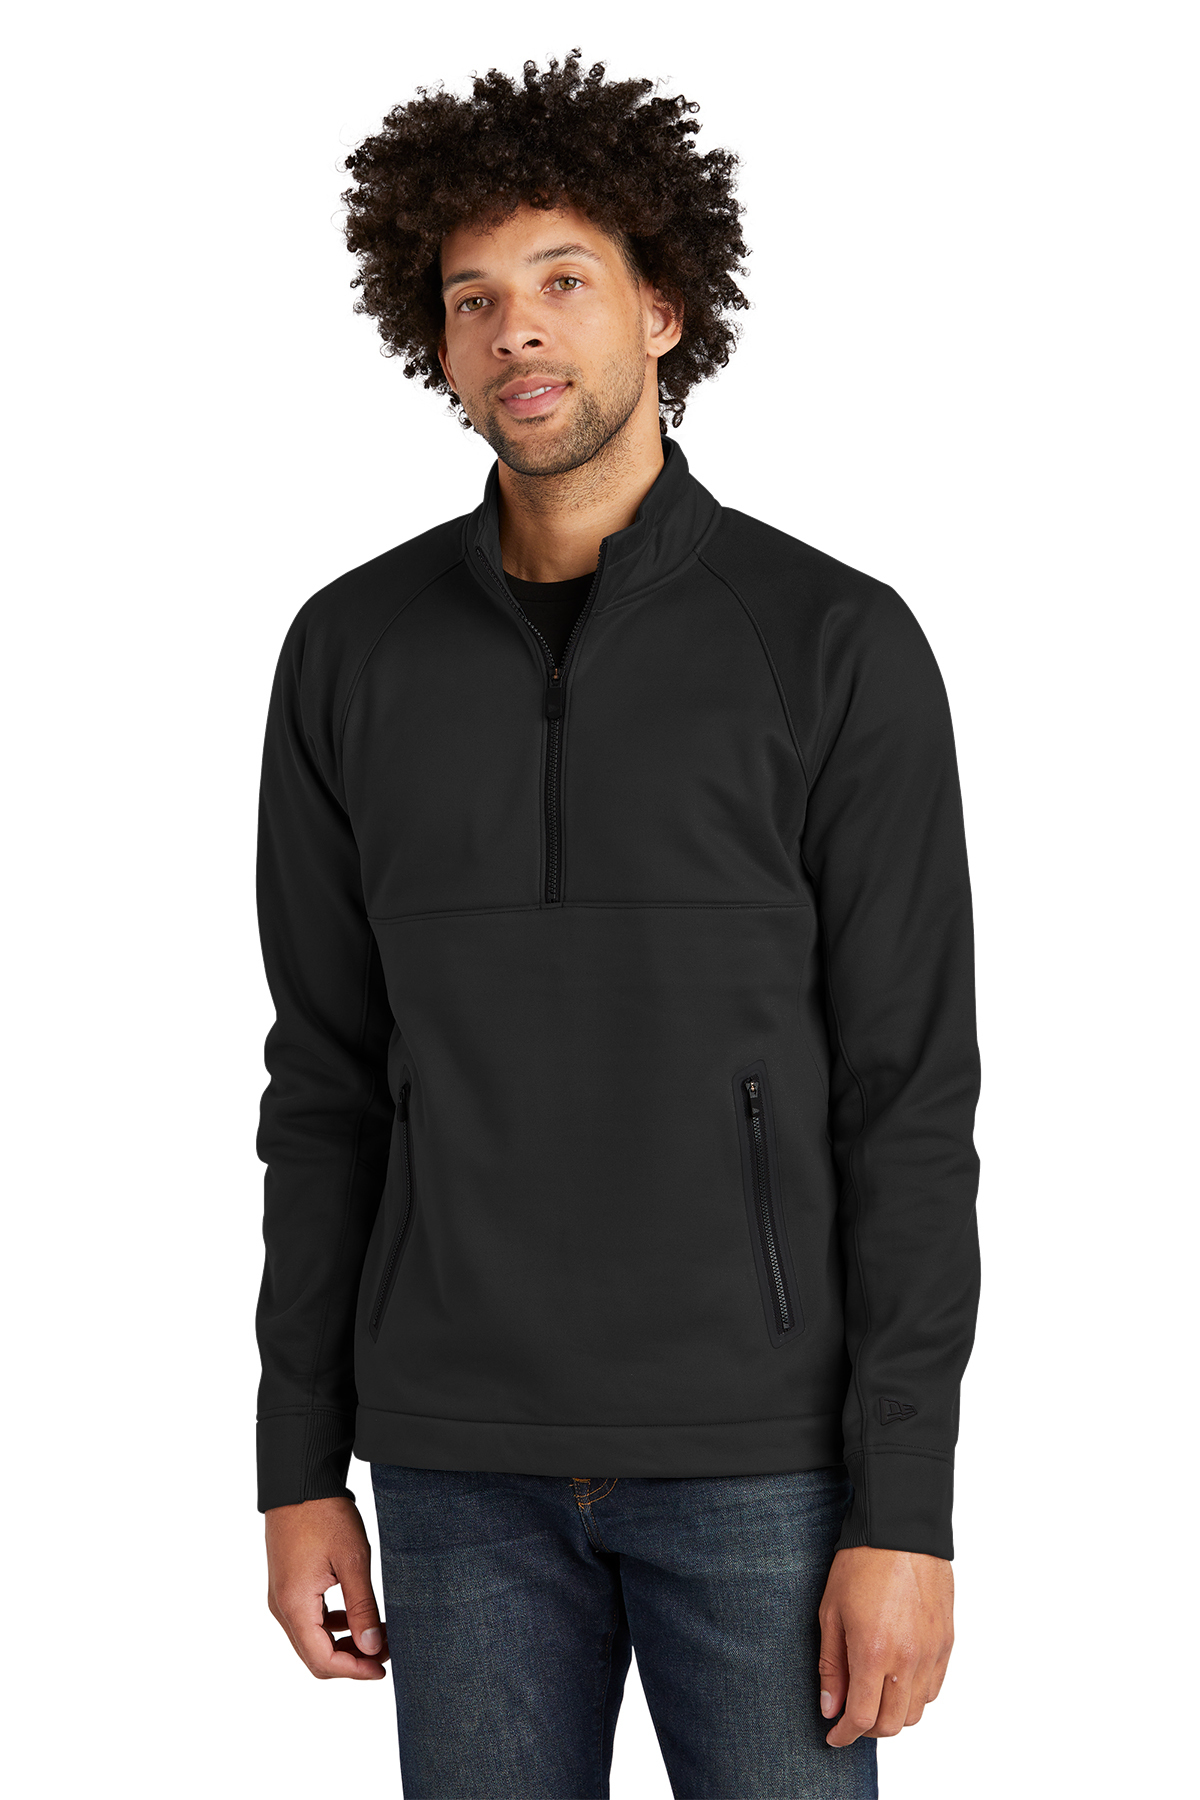 New Era Venue Fleece 1/4-Zip Pullover | Product | SanMar